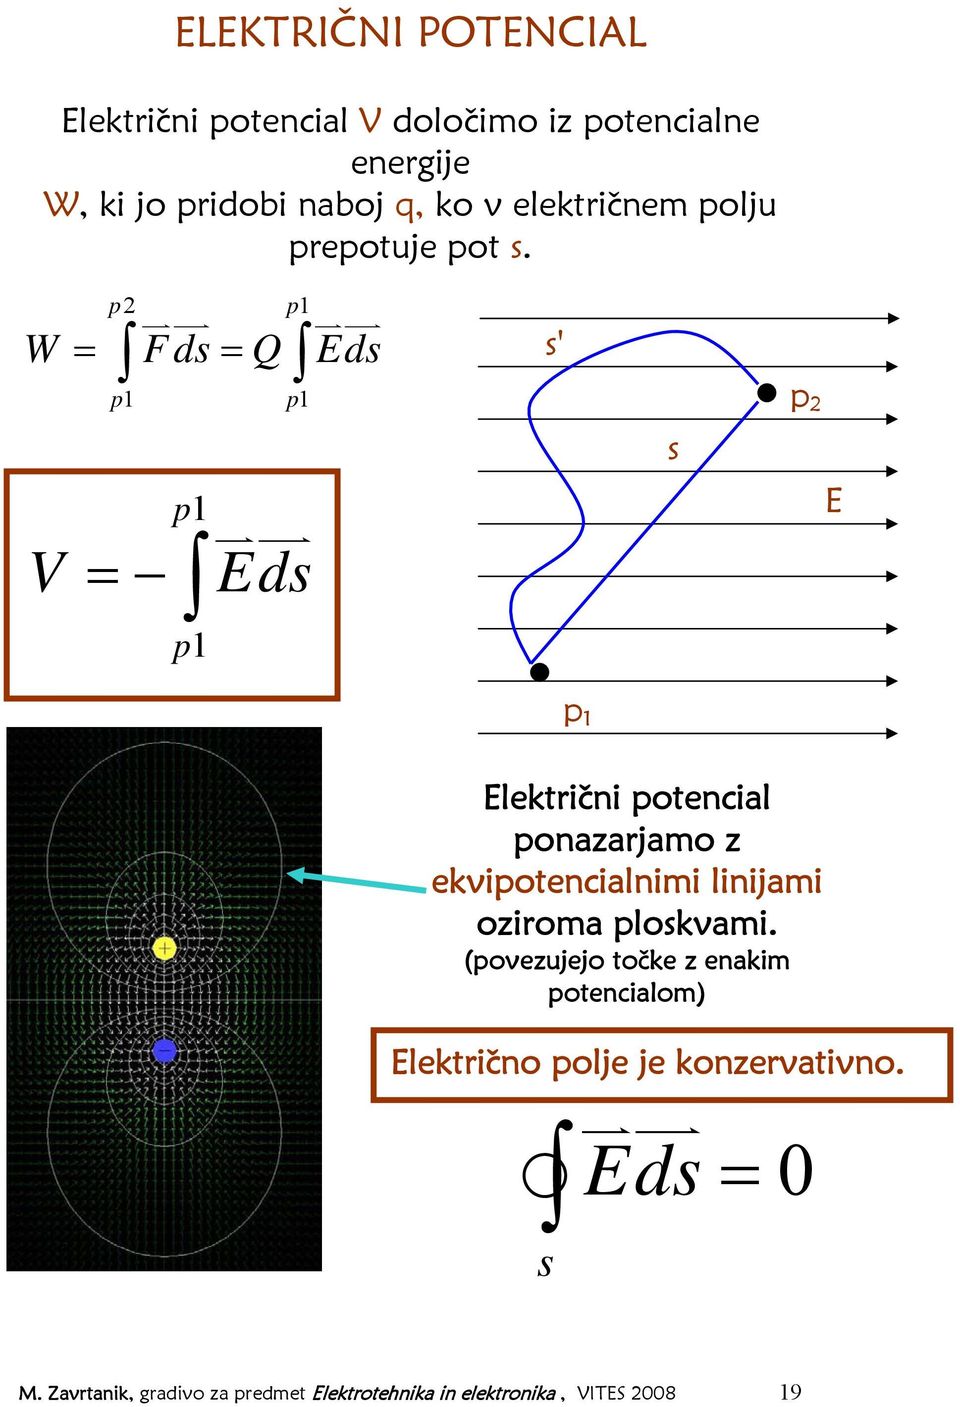 p2 p1 W = Fds = Q Eds V p1 p1 p1 = p1 Eds s' s p 2 E p 1 Električni potencial ponazarjamo z ekvipotencialnimi